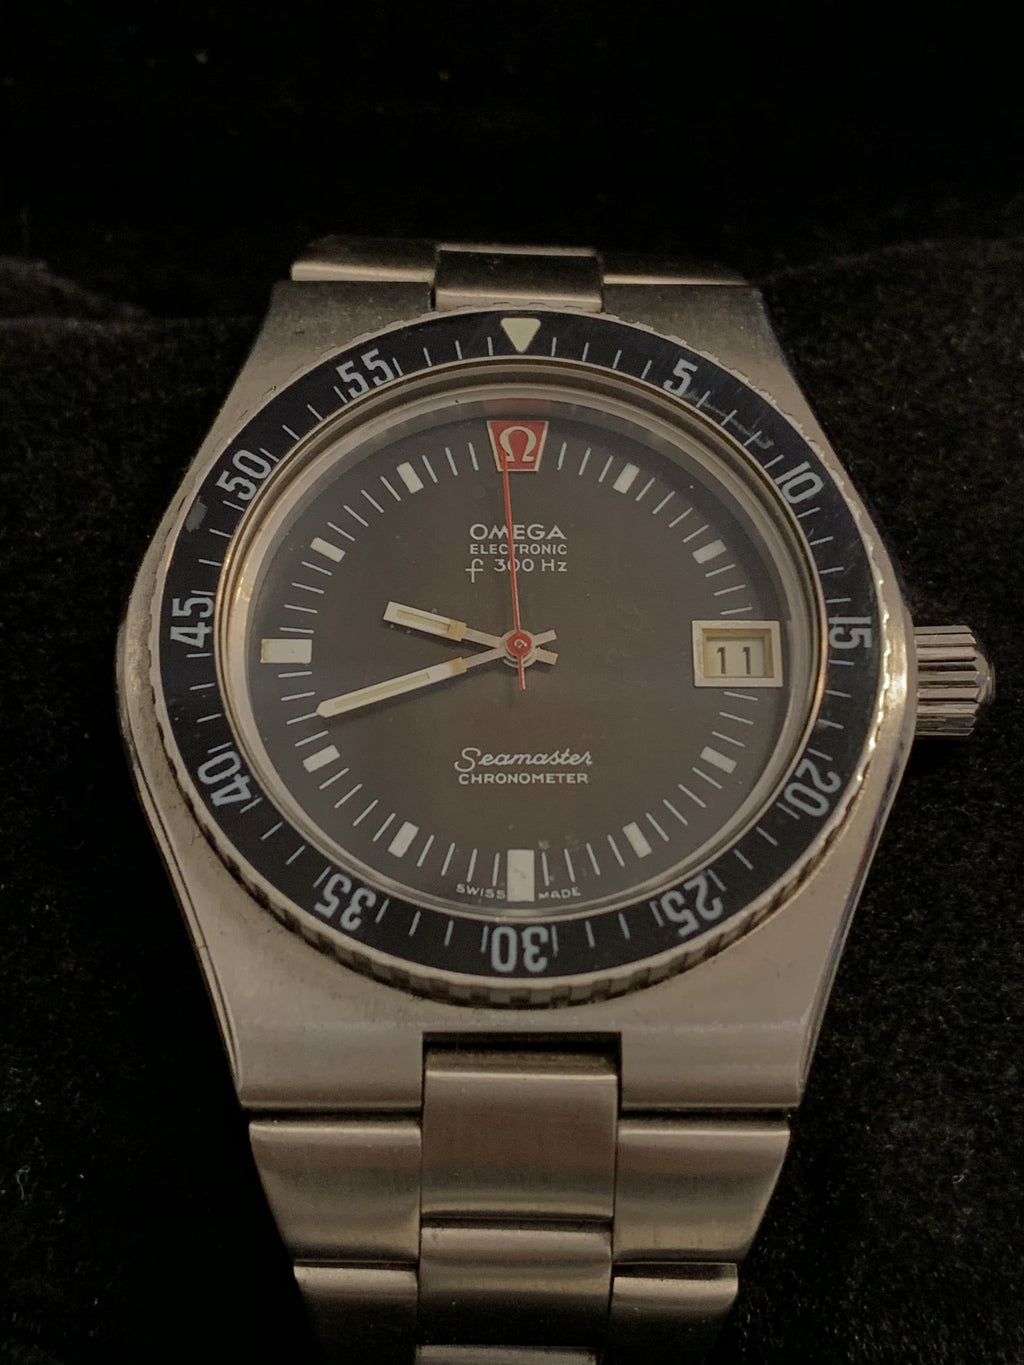 OMEGA SEAMASTER CHRONOMETER Electronic F 300 Hertz Watch